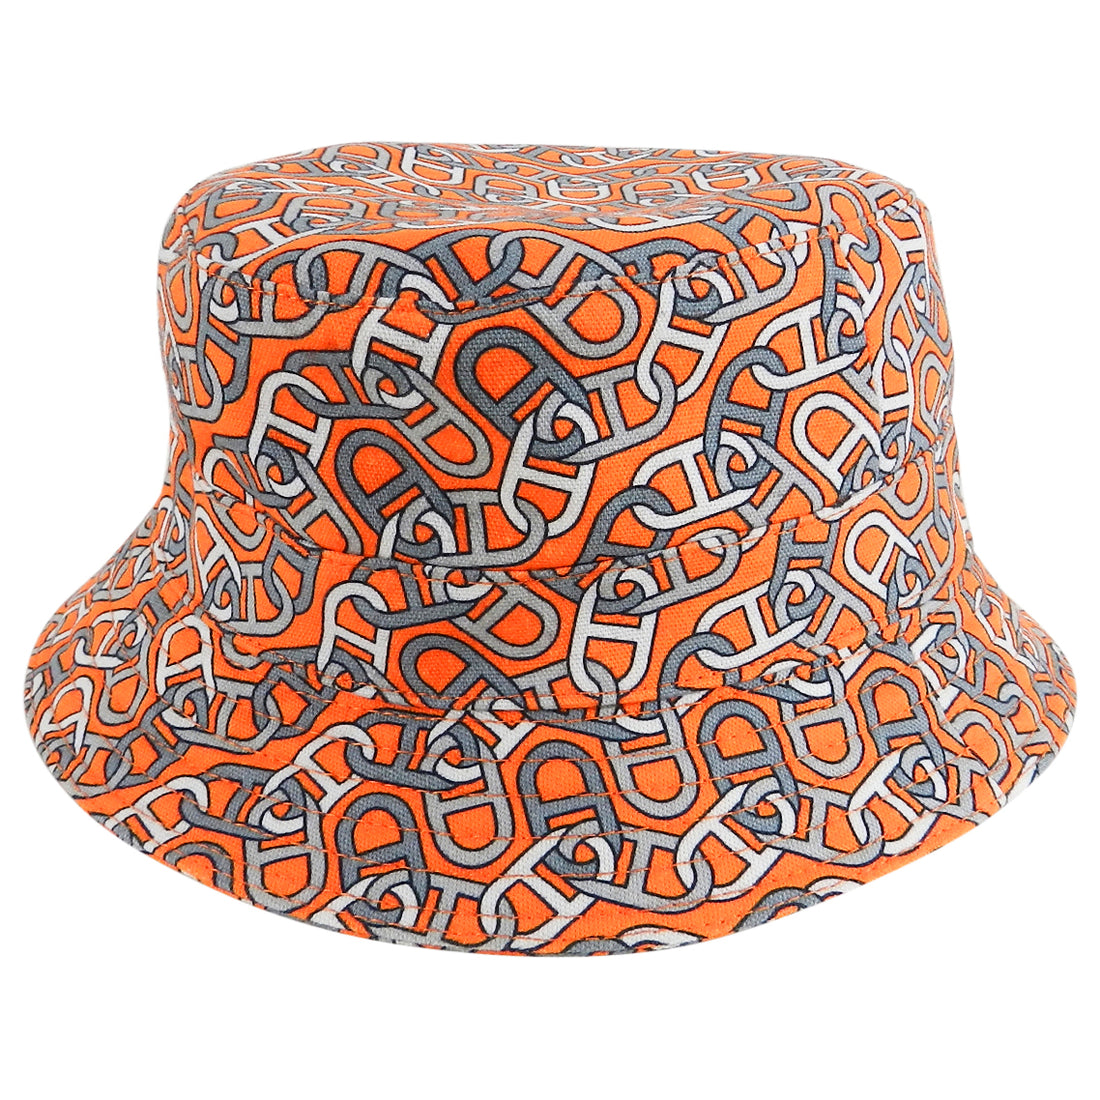 Hermes Orange Cotton Bucket Hat with Chain Design